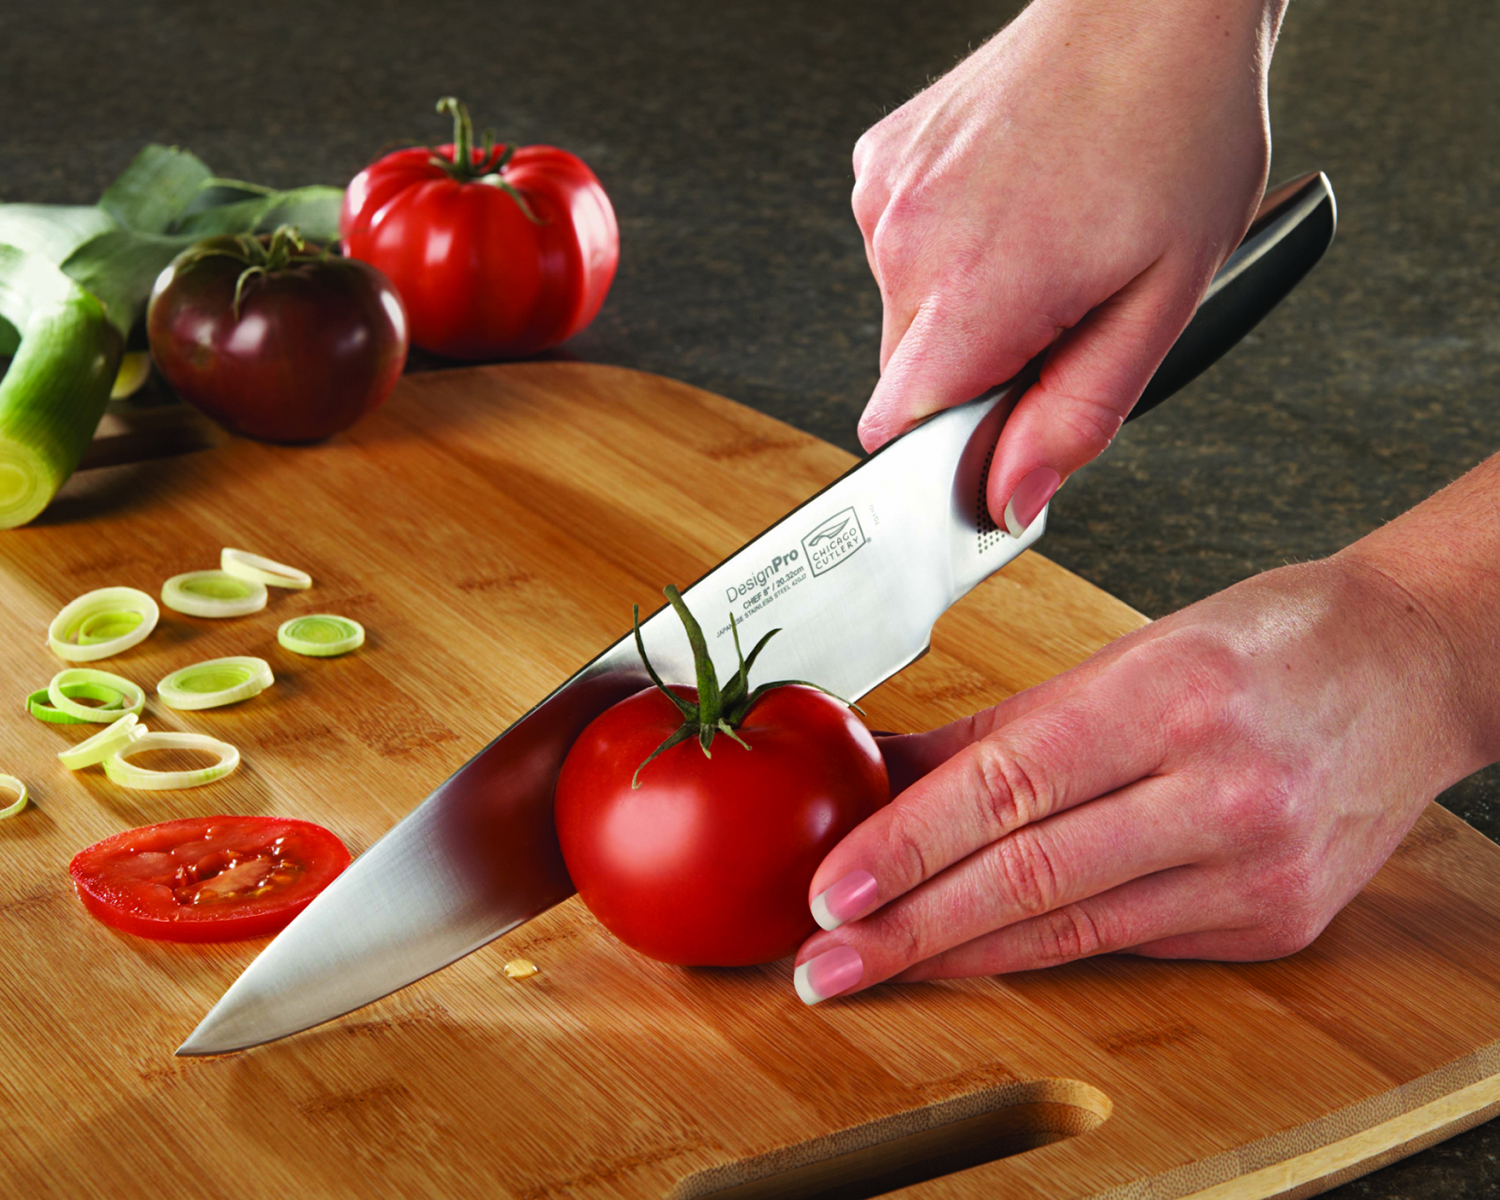 Τα καλά ακονισμένα μαχαίρια απαιτούν λιγότερη πίεση και προσπάθεια για να κόψουν κάτι